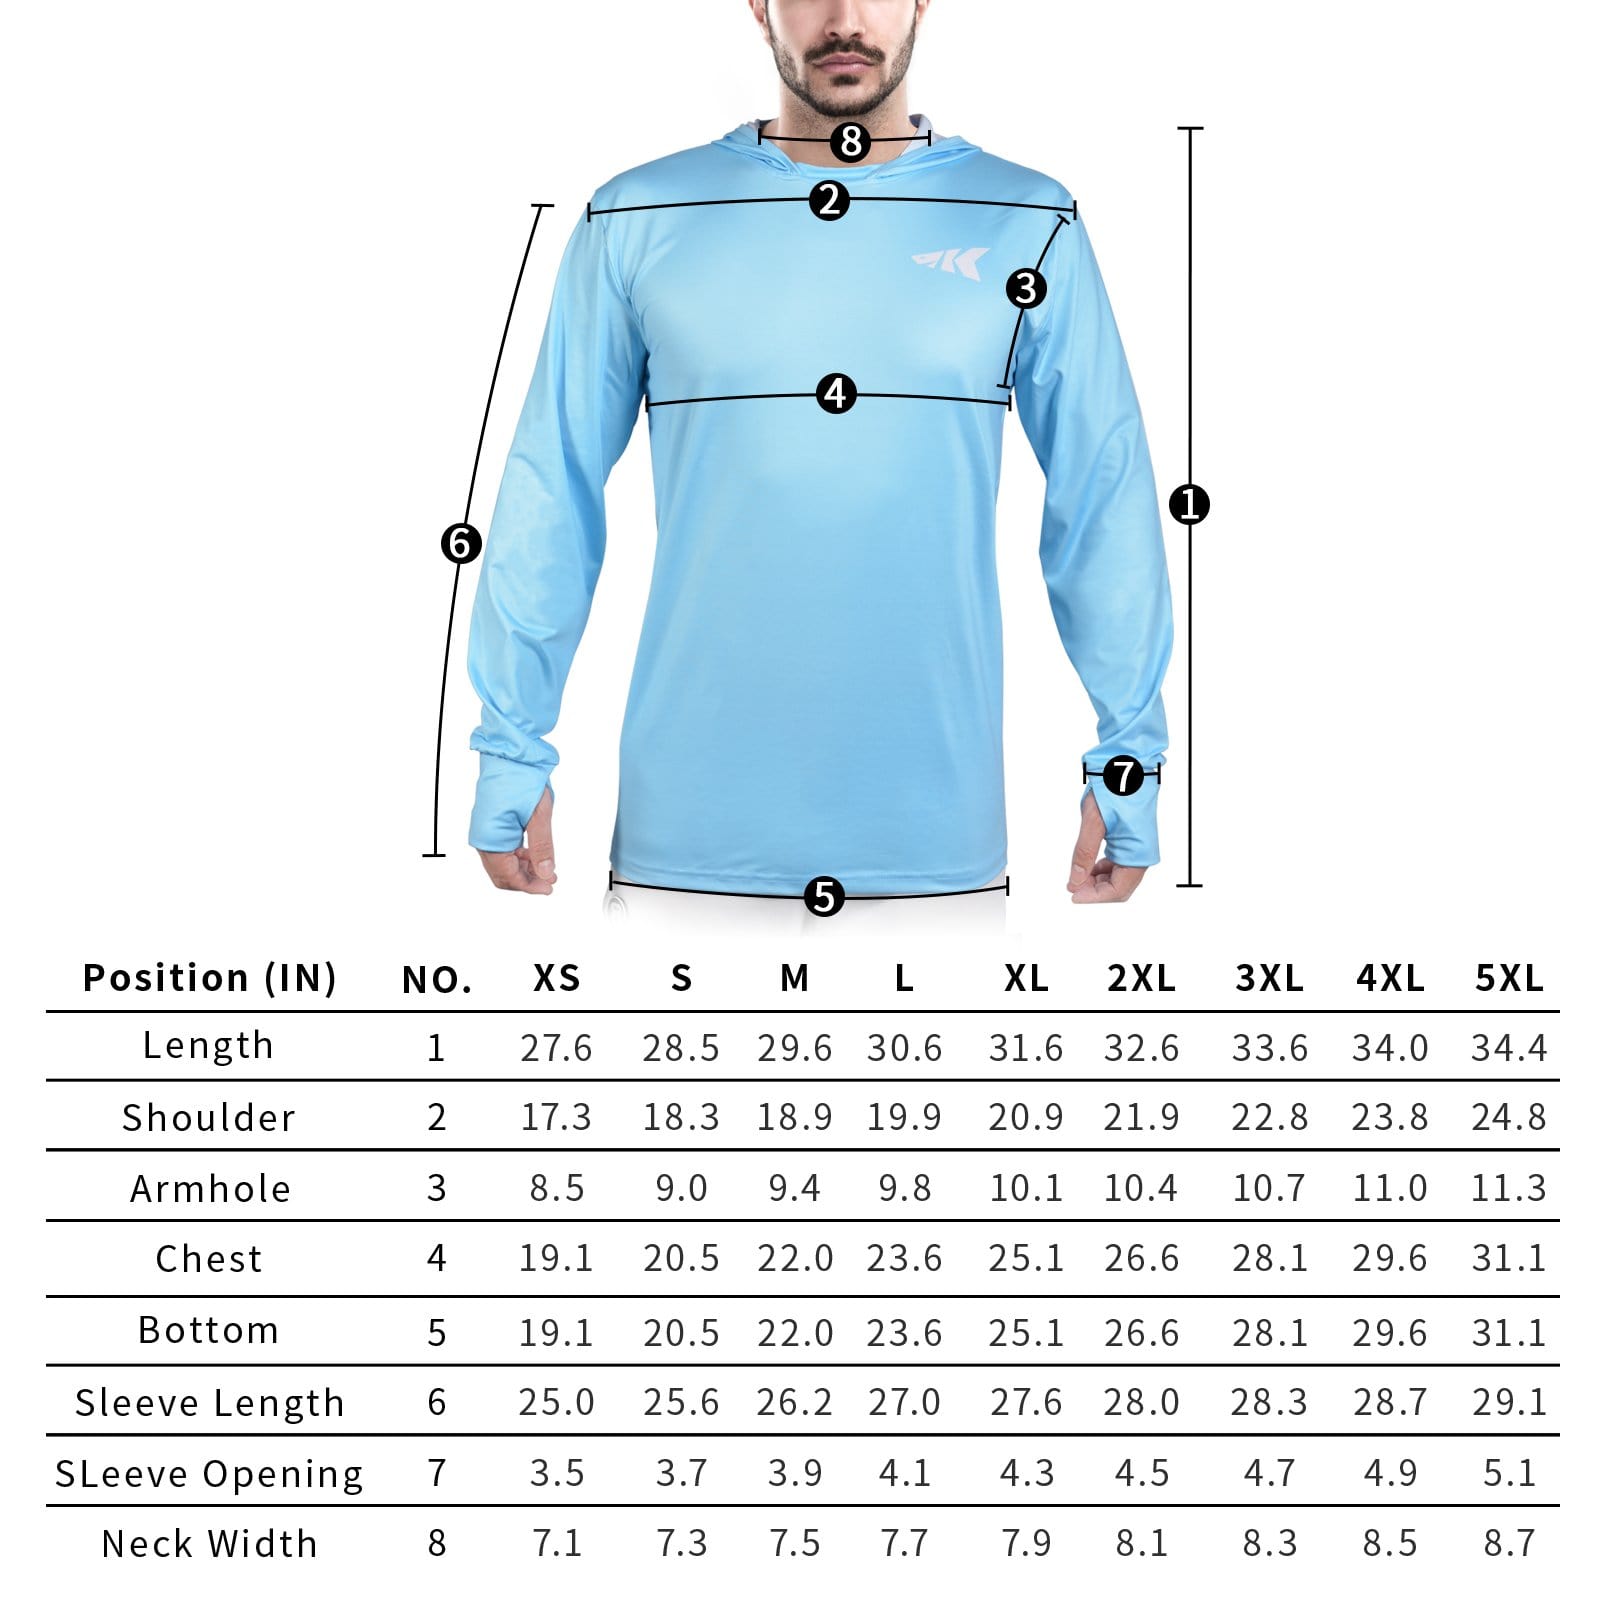 Men's Full Sleeve T-Shirt Size Chart